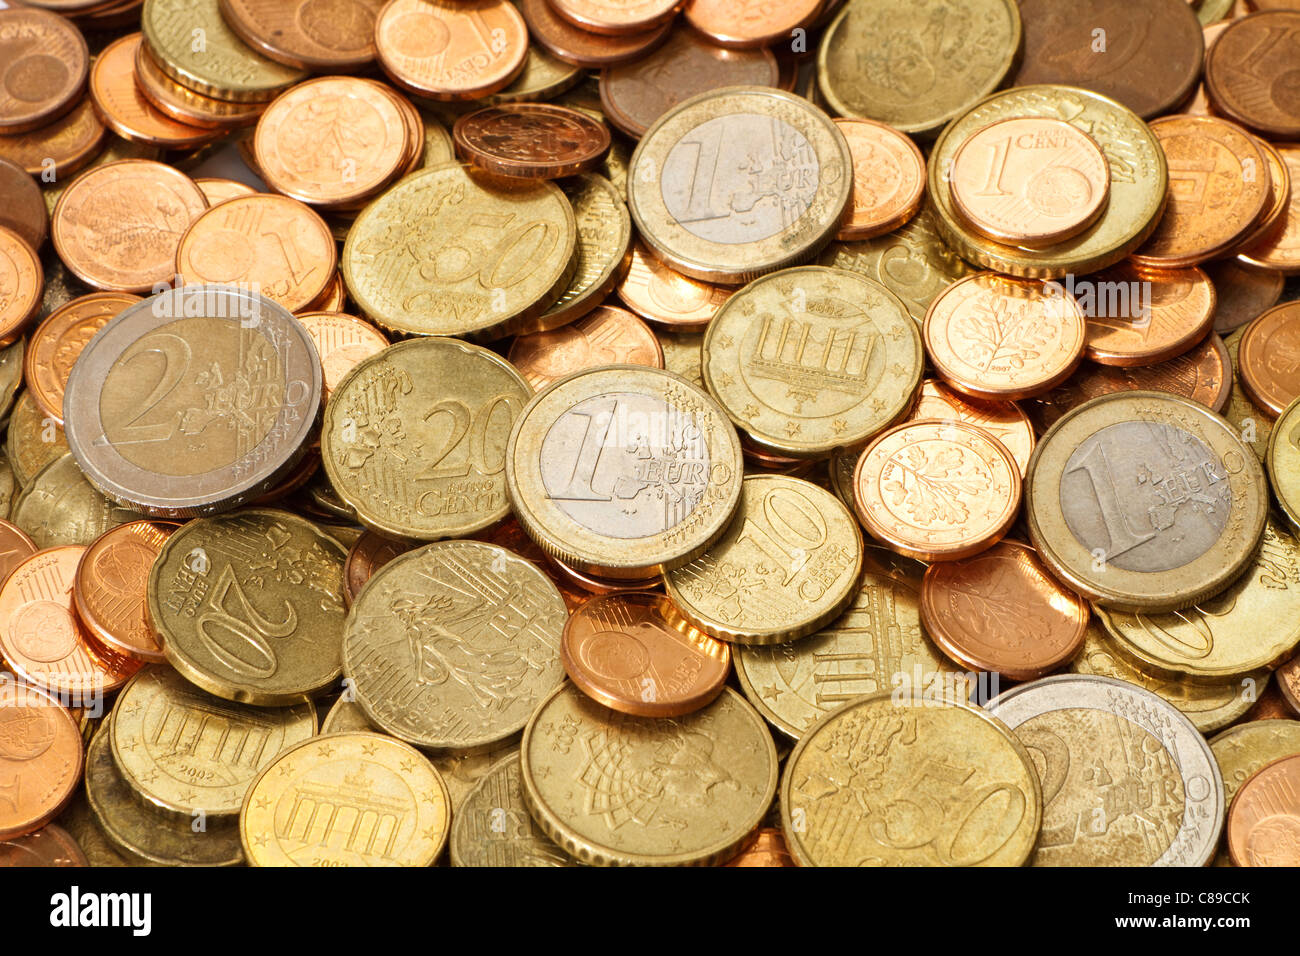 Ein Haufen von gebrauchten, Umlauf, modern, Euro-Münzen. In diesem Bild sind alle aktuellen Euro Münze Konfessionen vertreten. Stockfoto